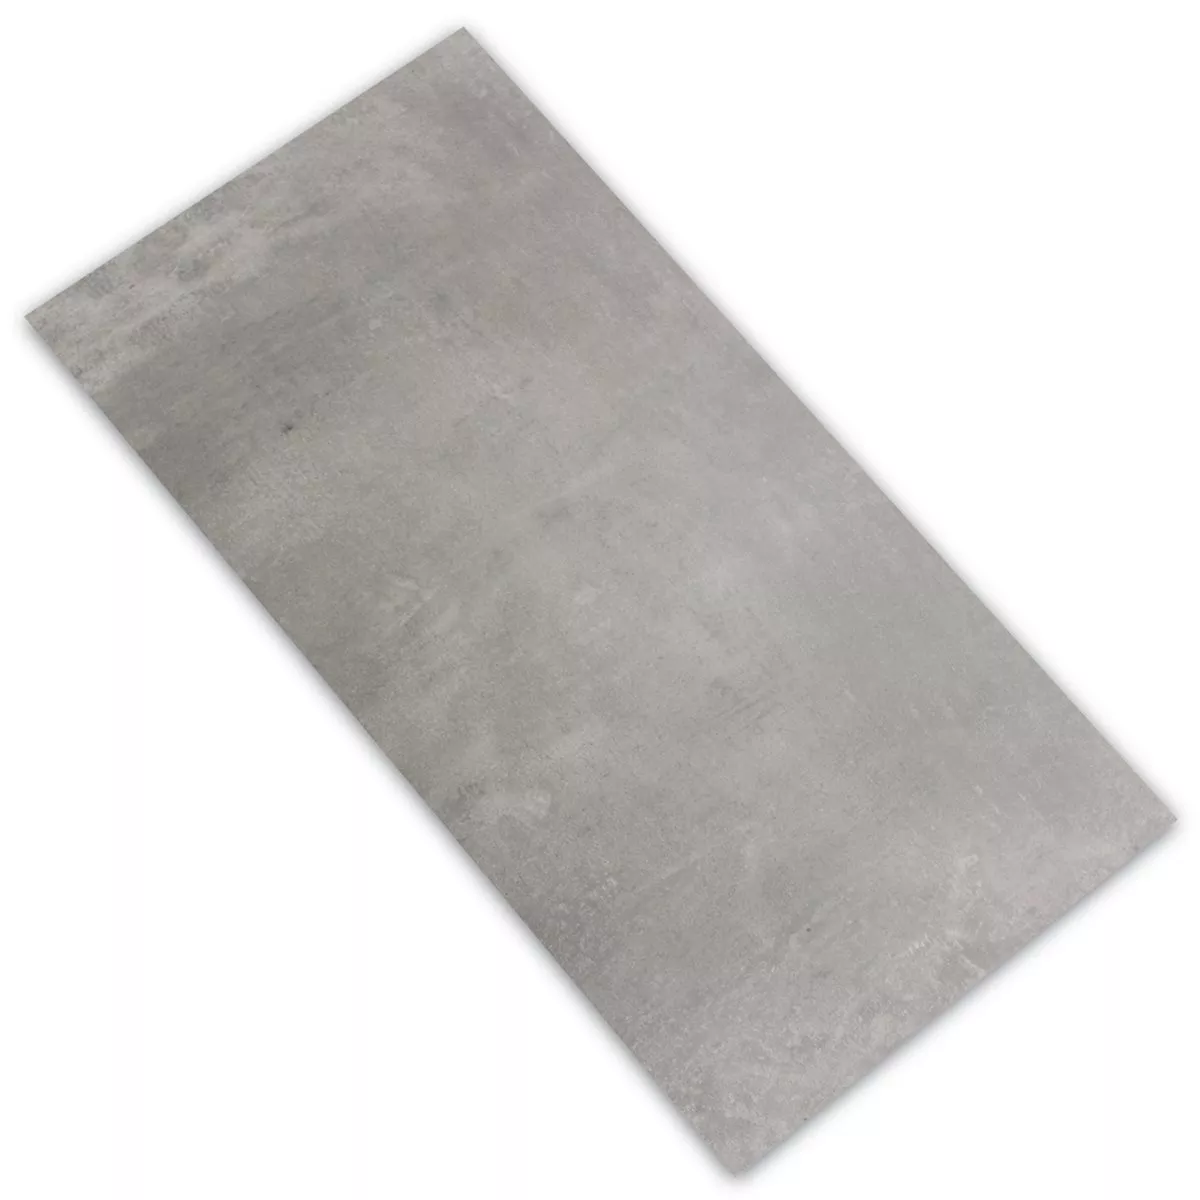 Sample Floor Tiles Etna Light Grey Glazed 30x60cm